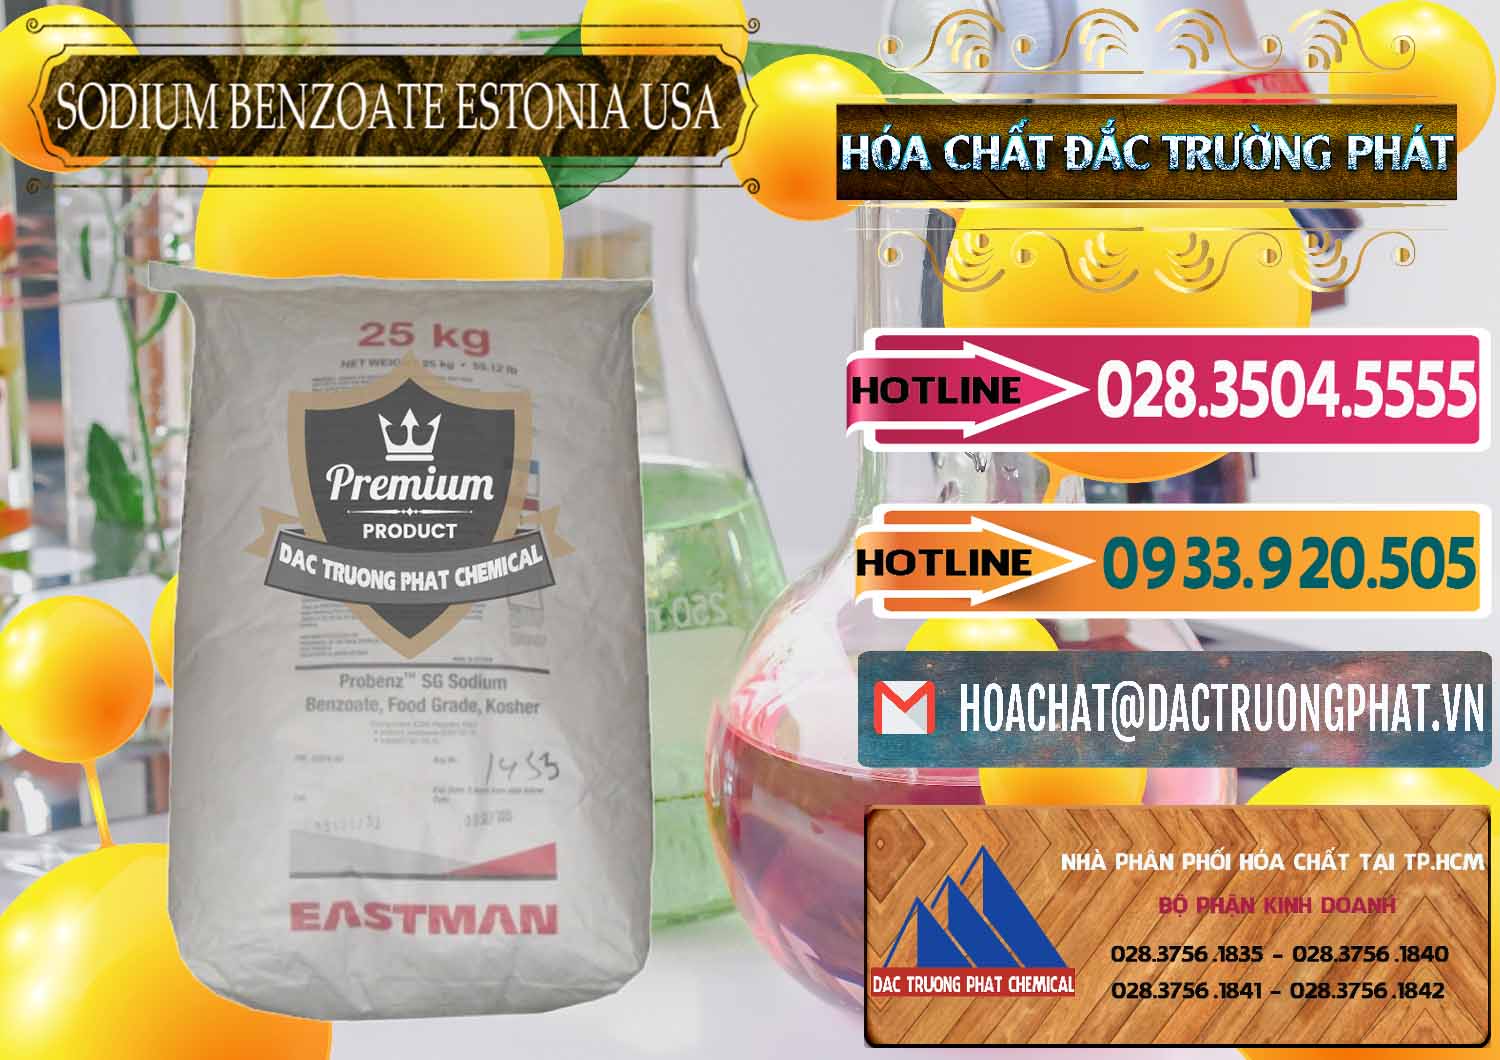 Cty chuyên bán - cung cấp Sodium Benzoate - Mốc Bột Estonia Mỹ USA - 0468 - Công ty nhập khẩu - cung cấp hóa chất tại TP.HCM - dactruongphat.vn